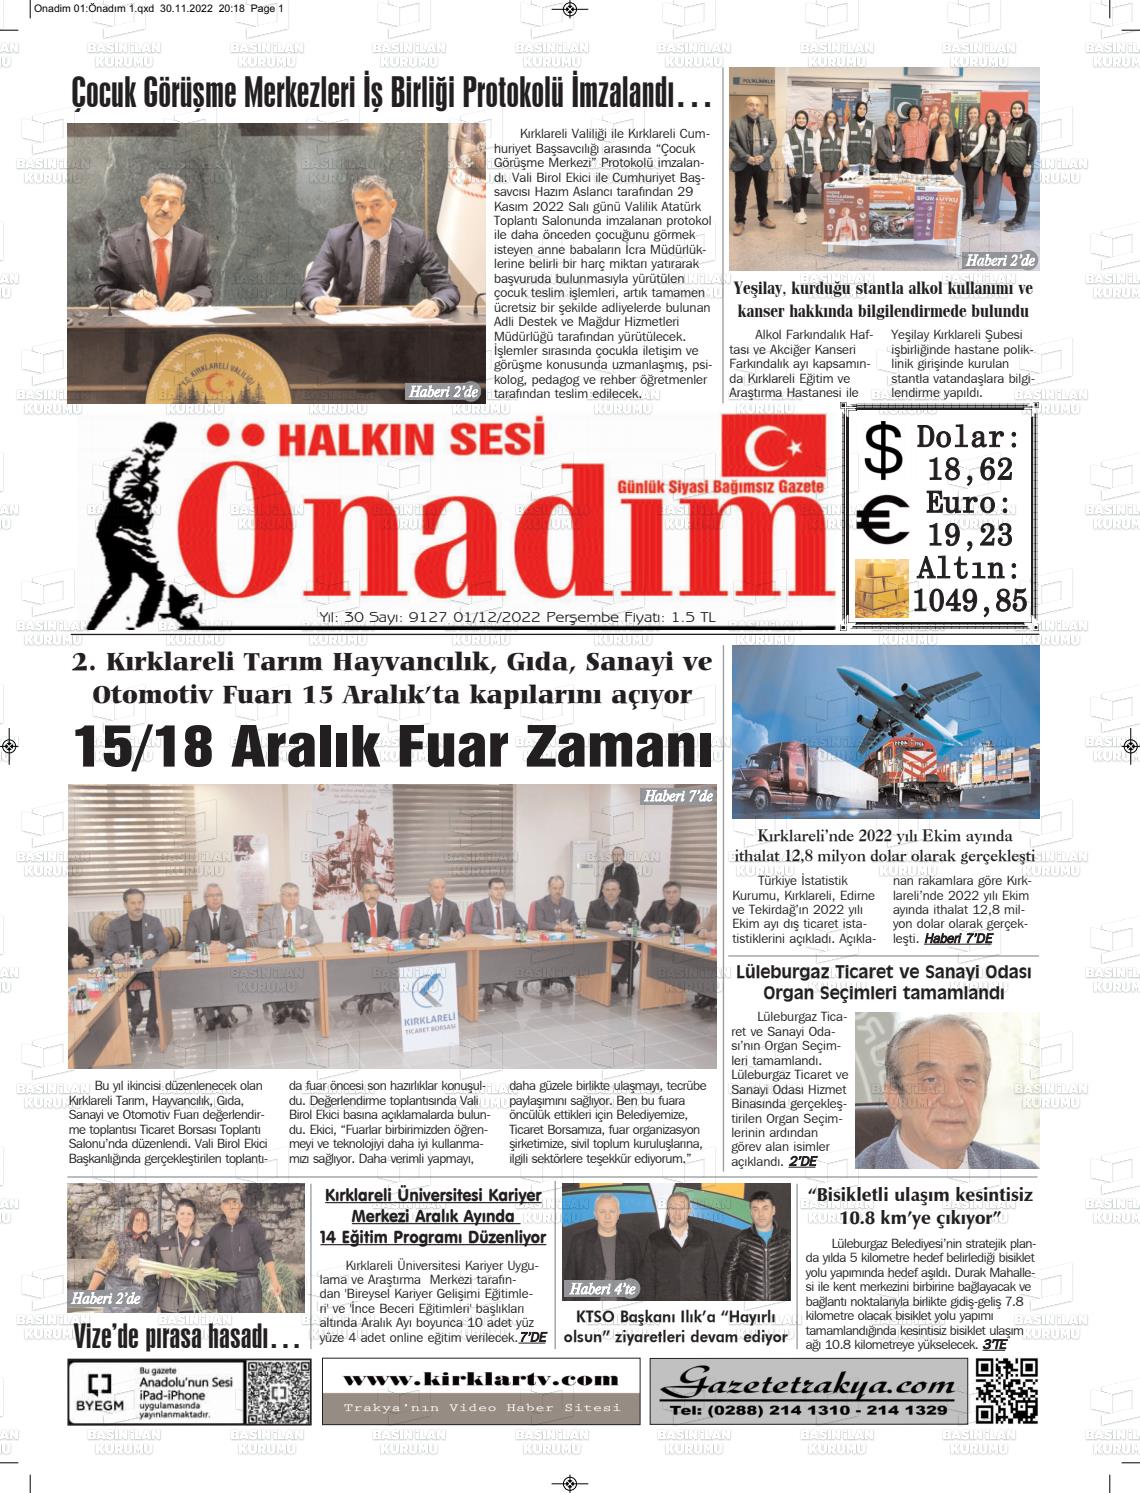 01 Aralık 2022 Halkın Sesi Önadım Gazete Manşeti